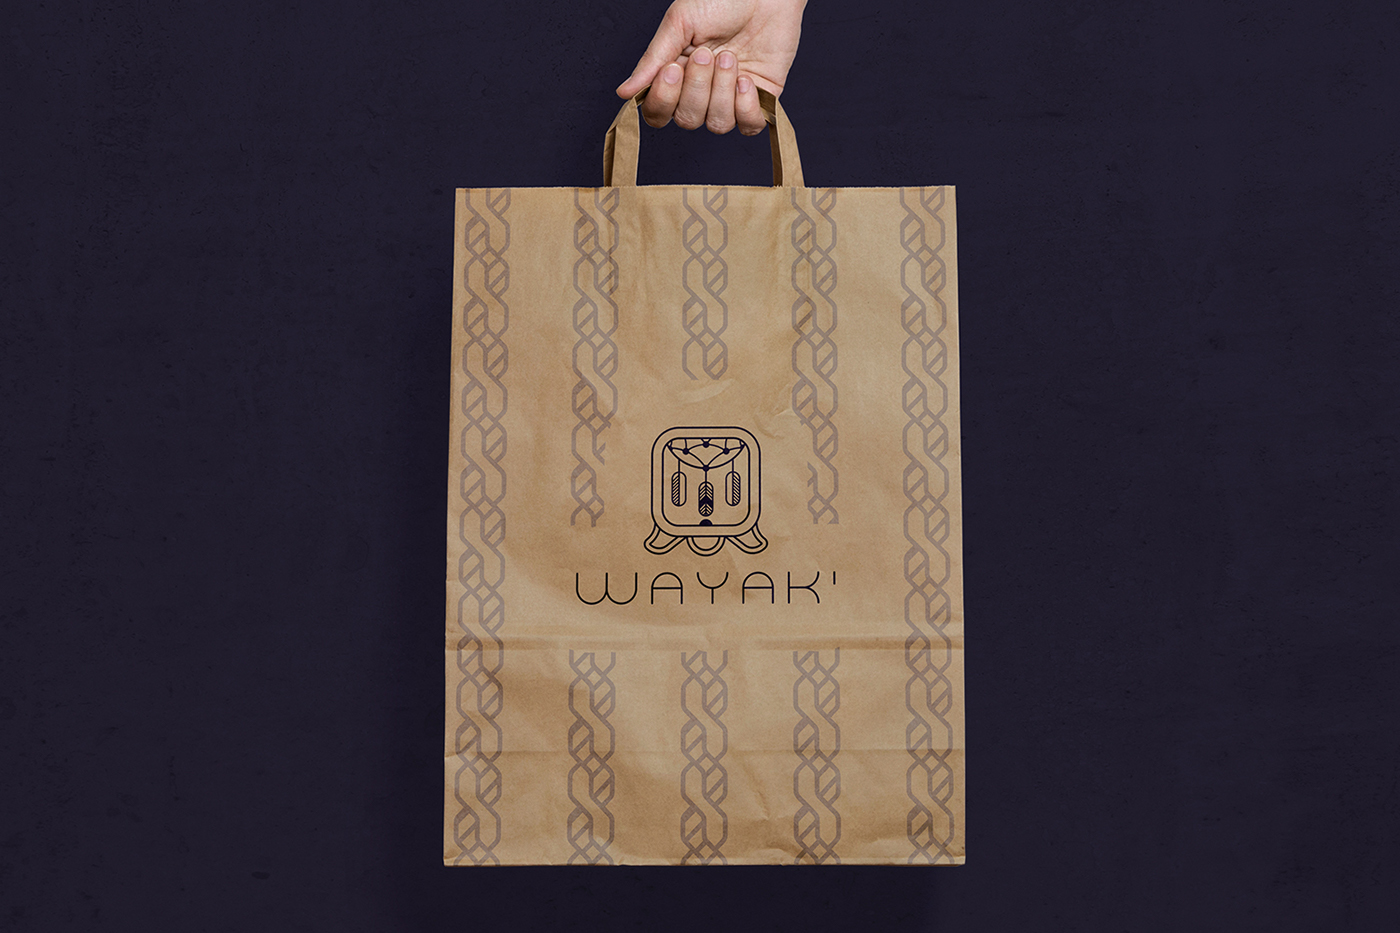 wayak marca Logotipo tipografia handcraft artesanal Mexican